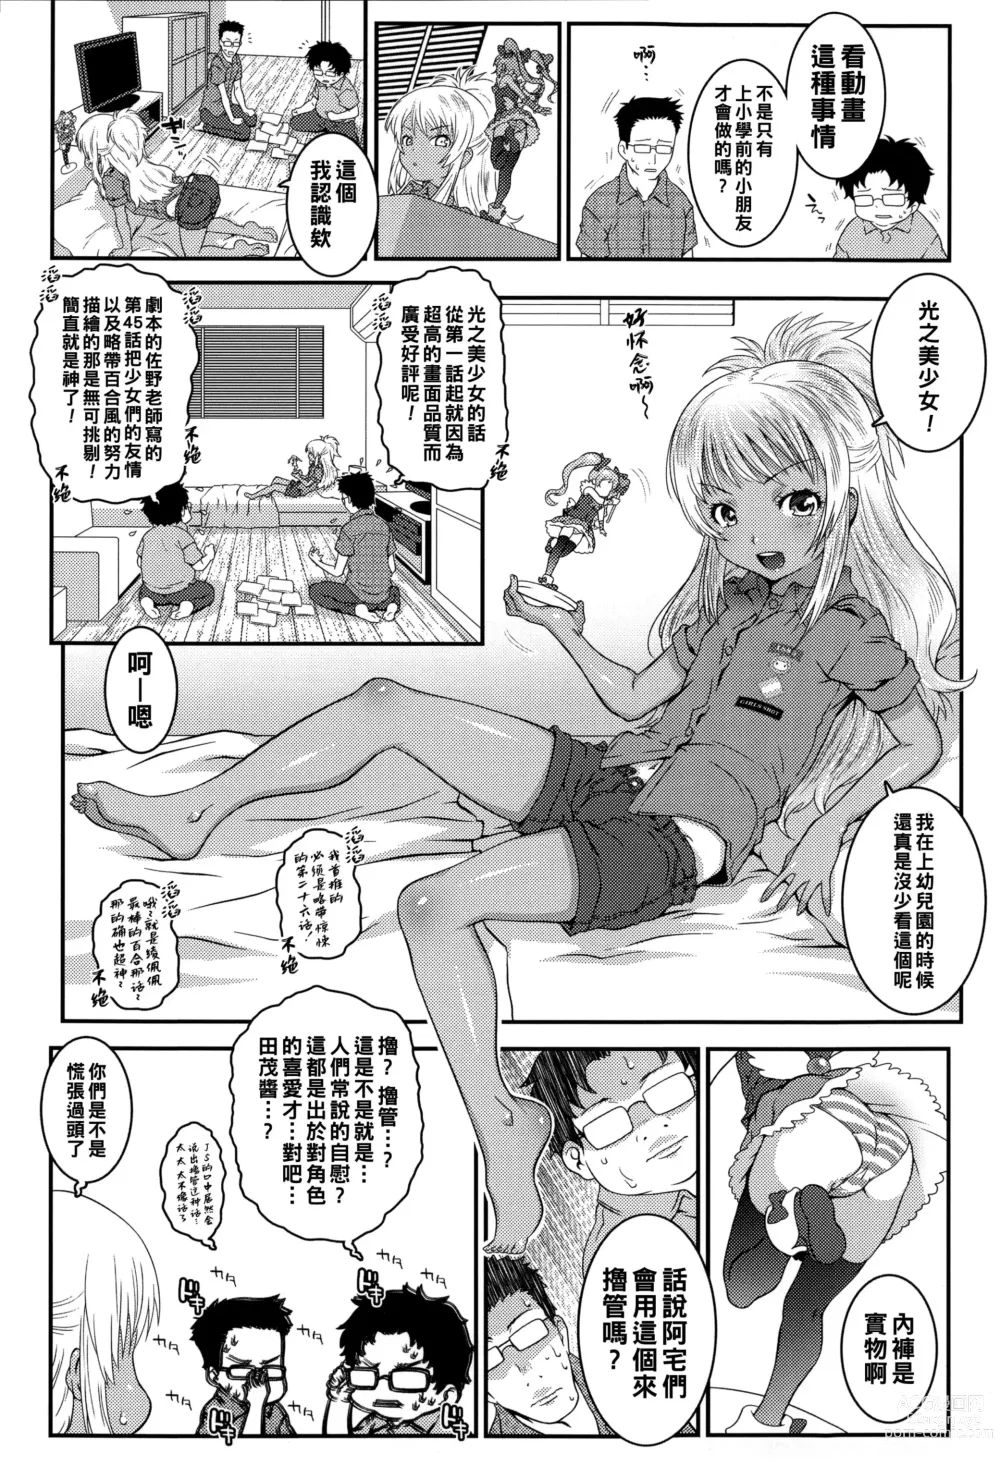 Page 2 of manga Bitch!!